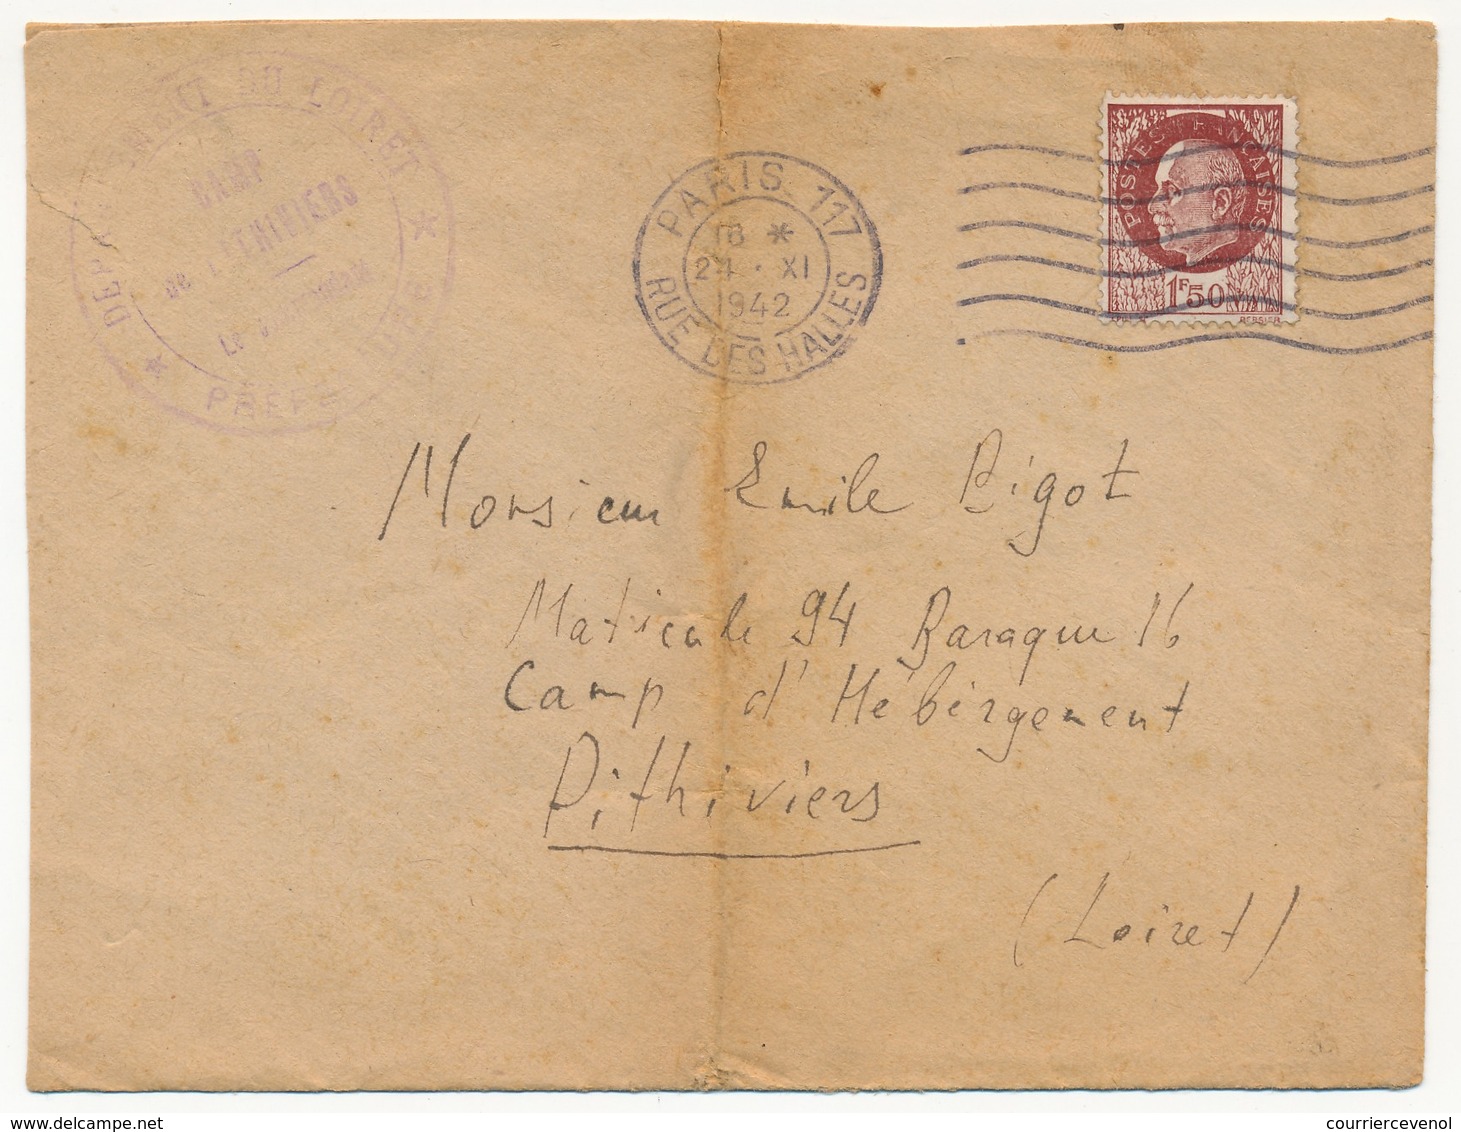 FRANCE - Enveloppe Adressée Au Camp D'Hébergement De PITHIVIERS (Loiret) En 1942 - Lettres & Documents